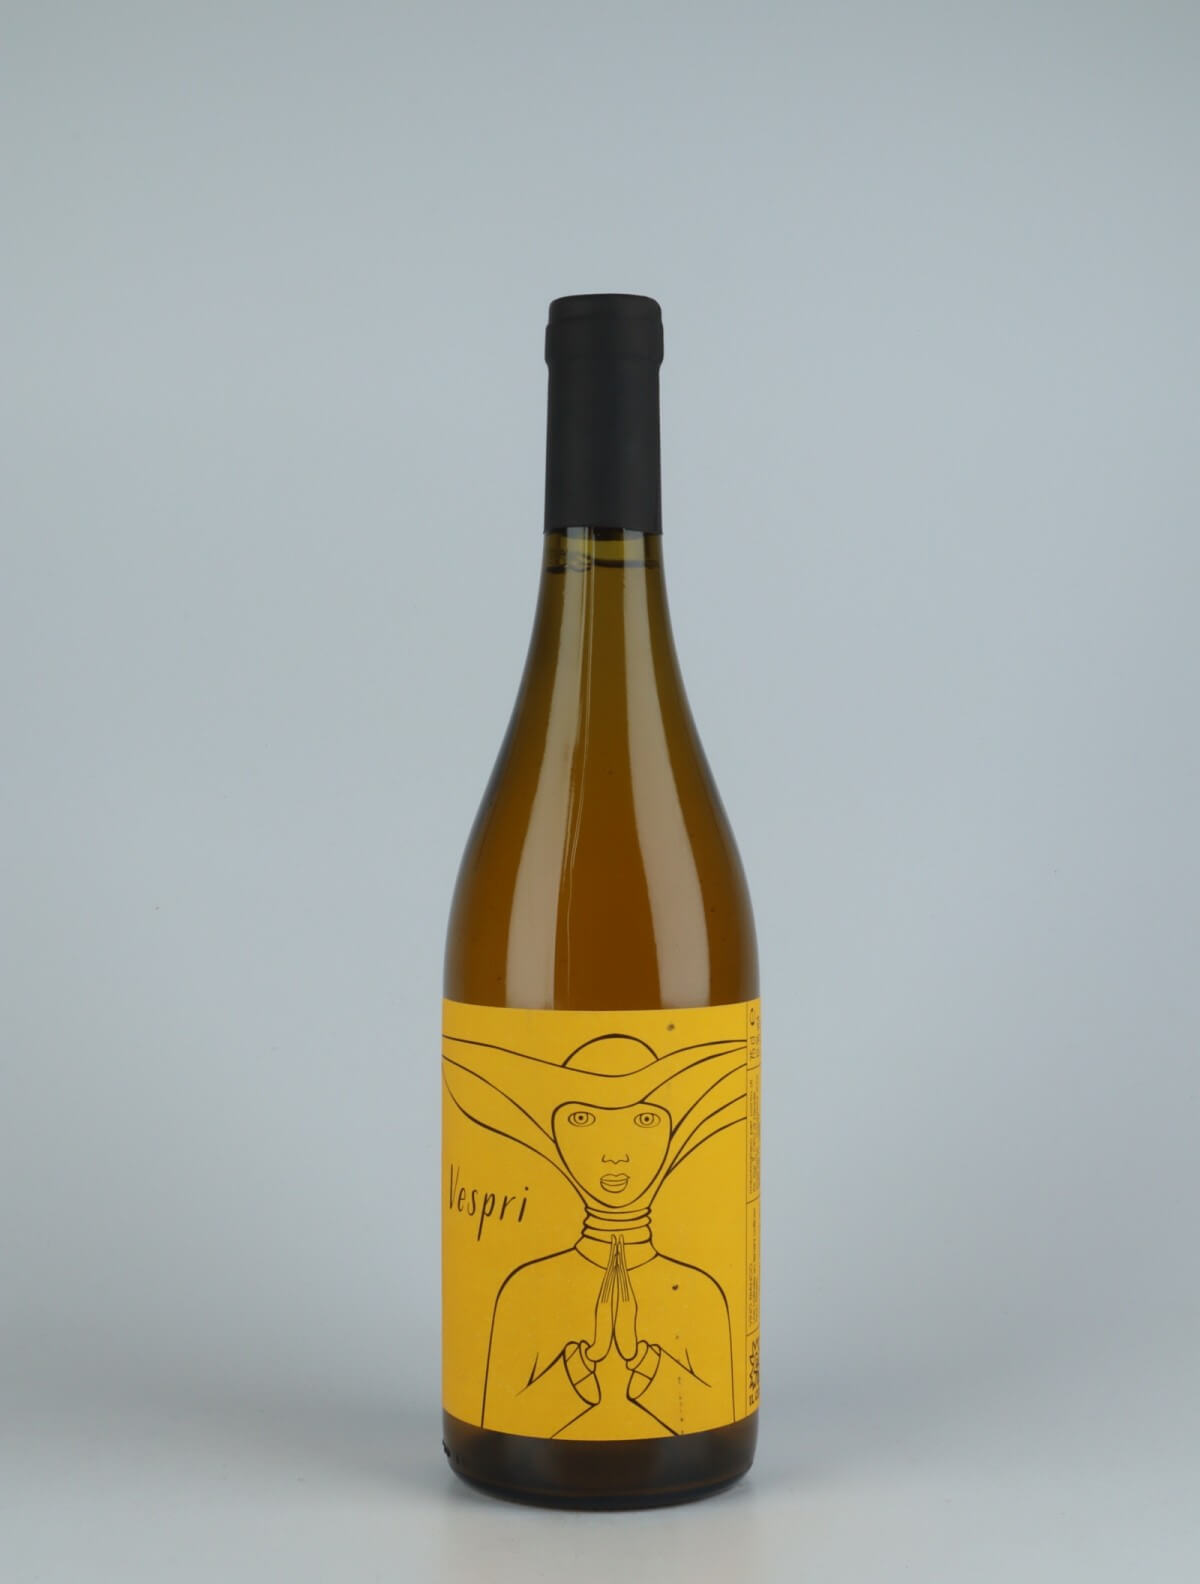 A bottle 2020 Vespri Orange wine from Il Ceo, Veneto in Italy